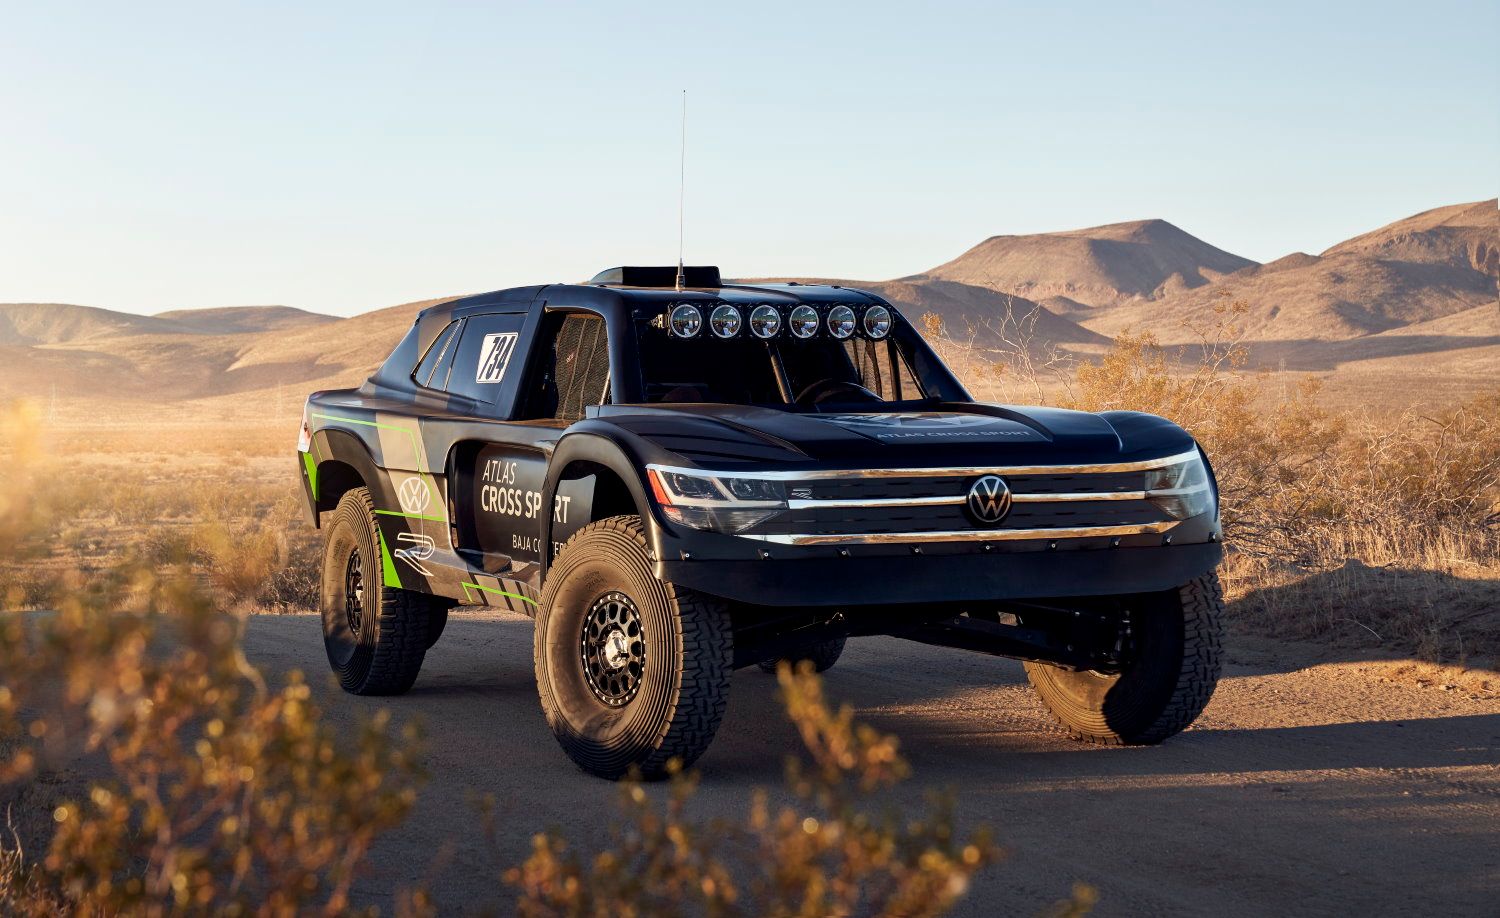 VW Atlas Cross Sport R Is The Trophy Truck To Take The Baja 1000